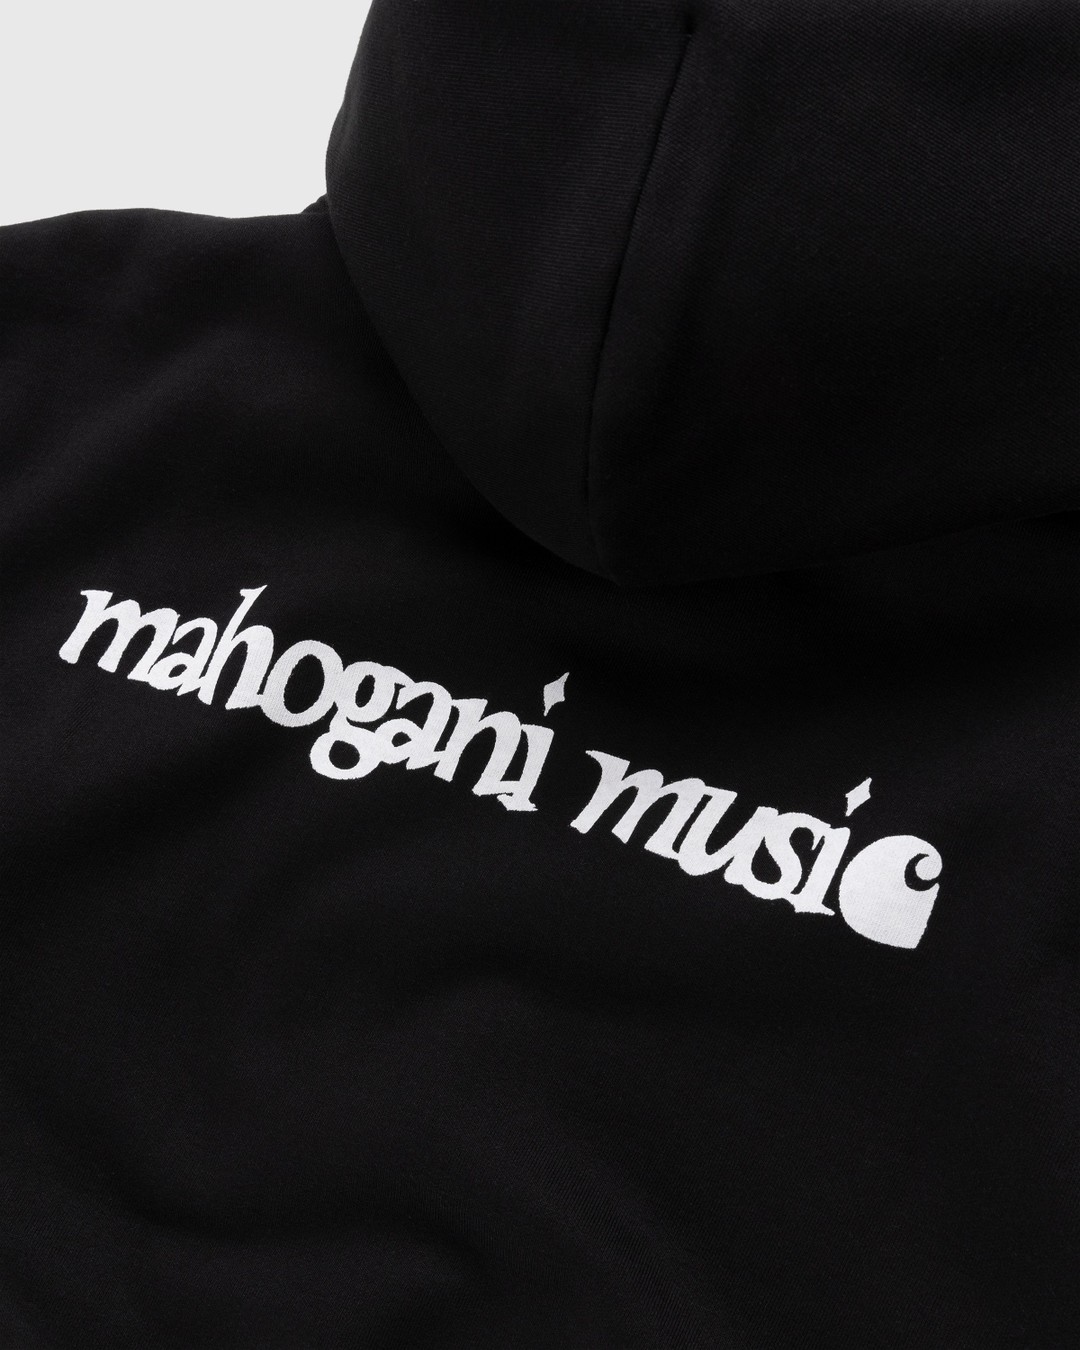 Carhartt WIP – Mahogani Music Hoodie Black/White - Sweats - Black - Image 3